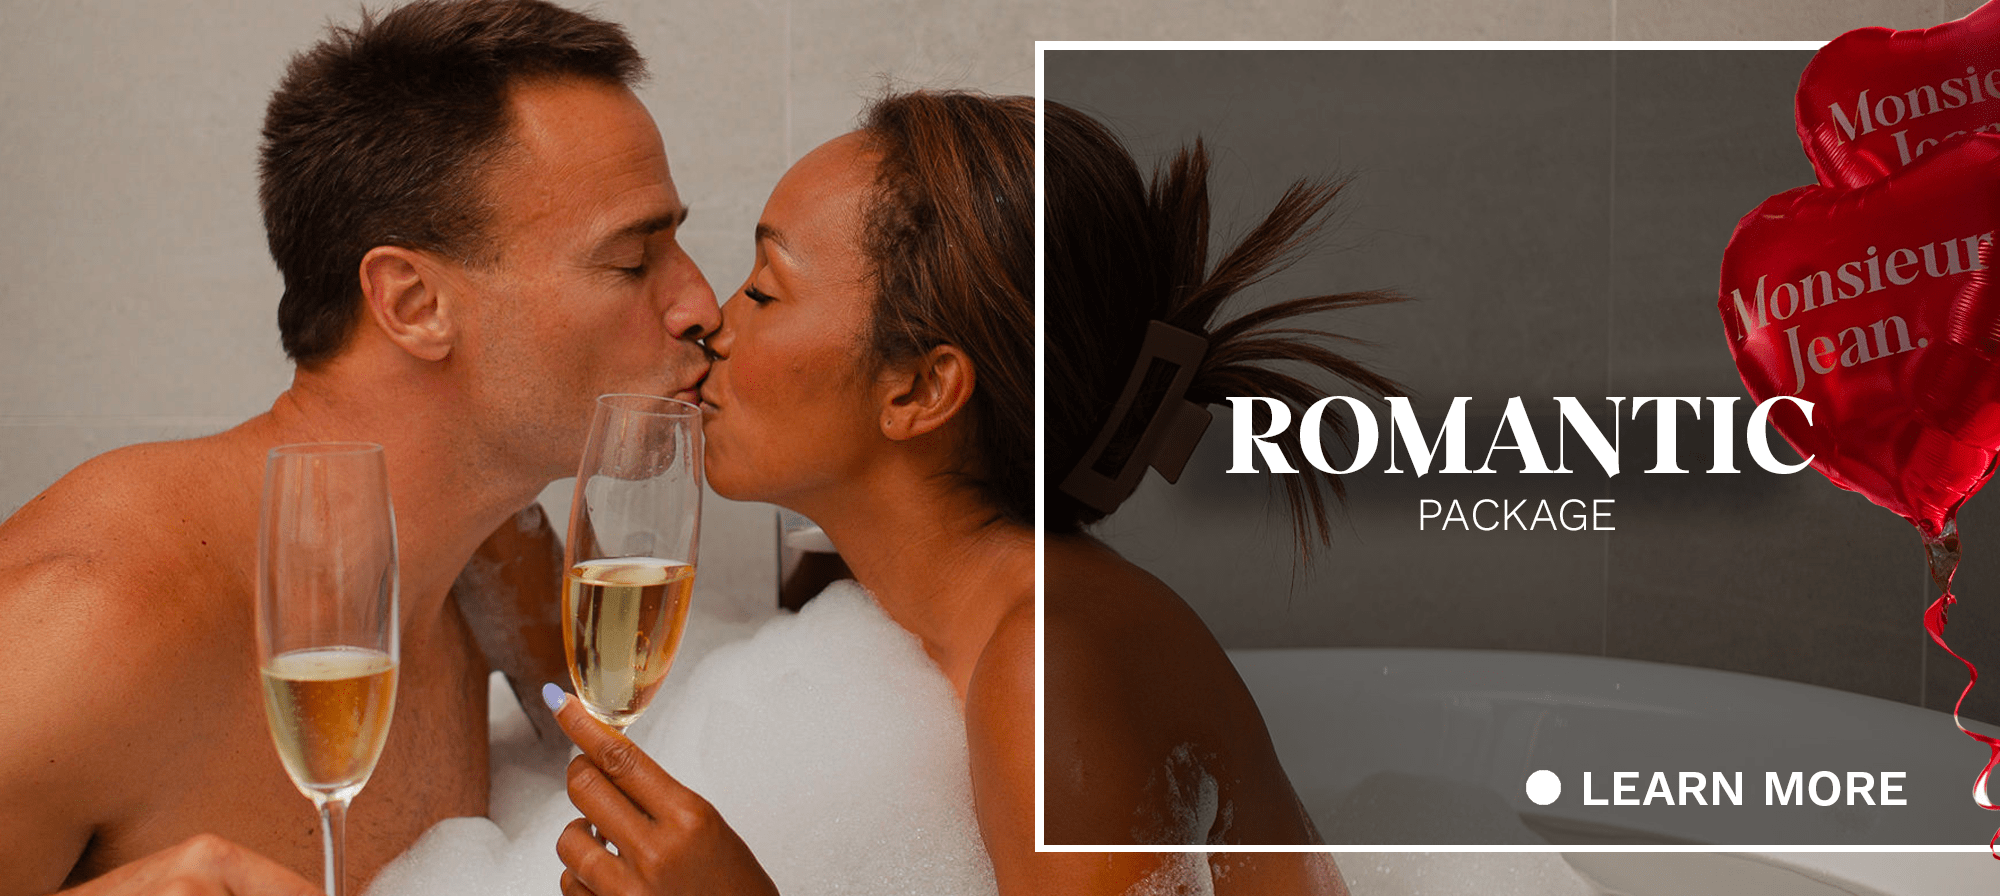 Couple kissing | Package | Monsieur Jean